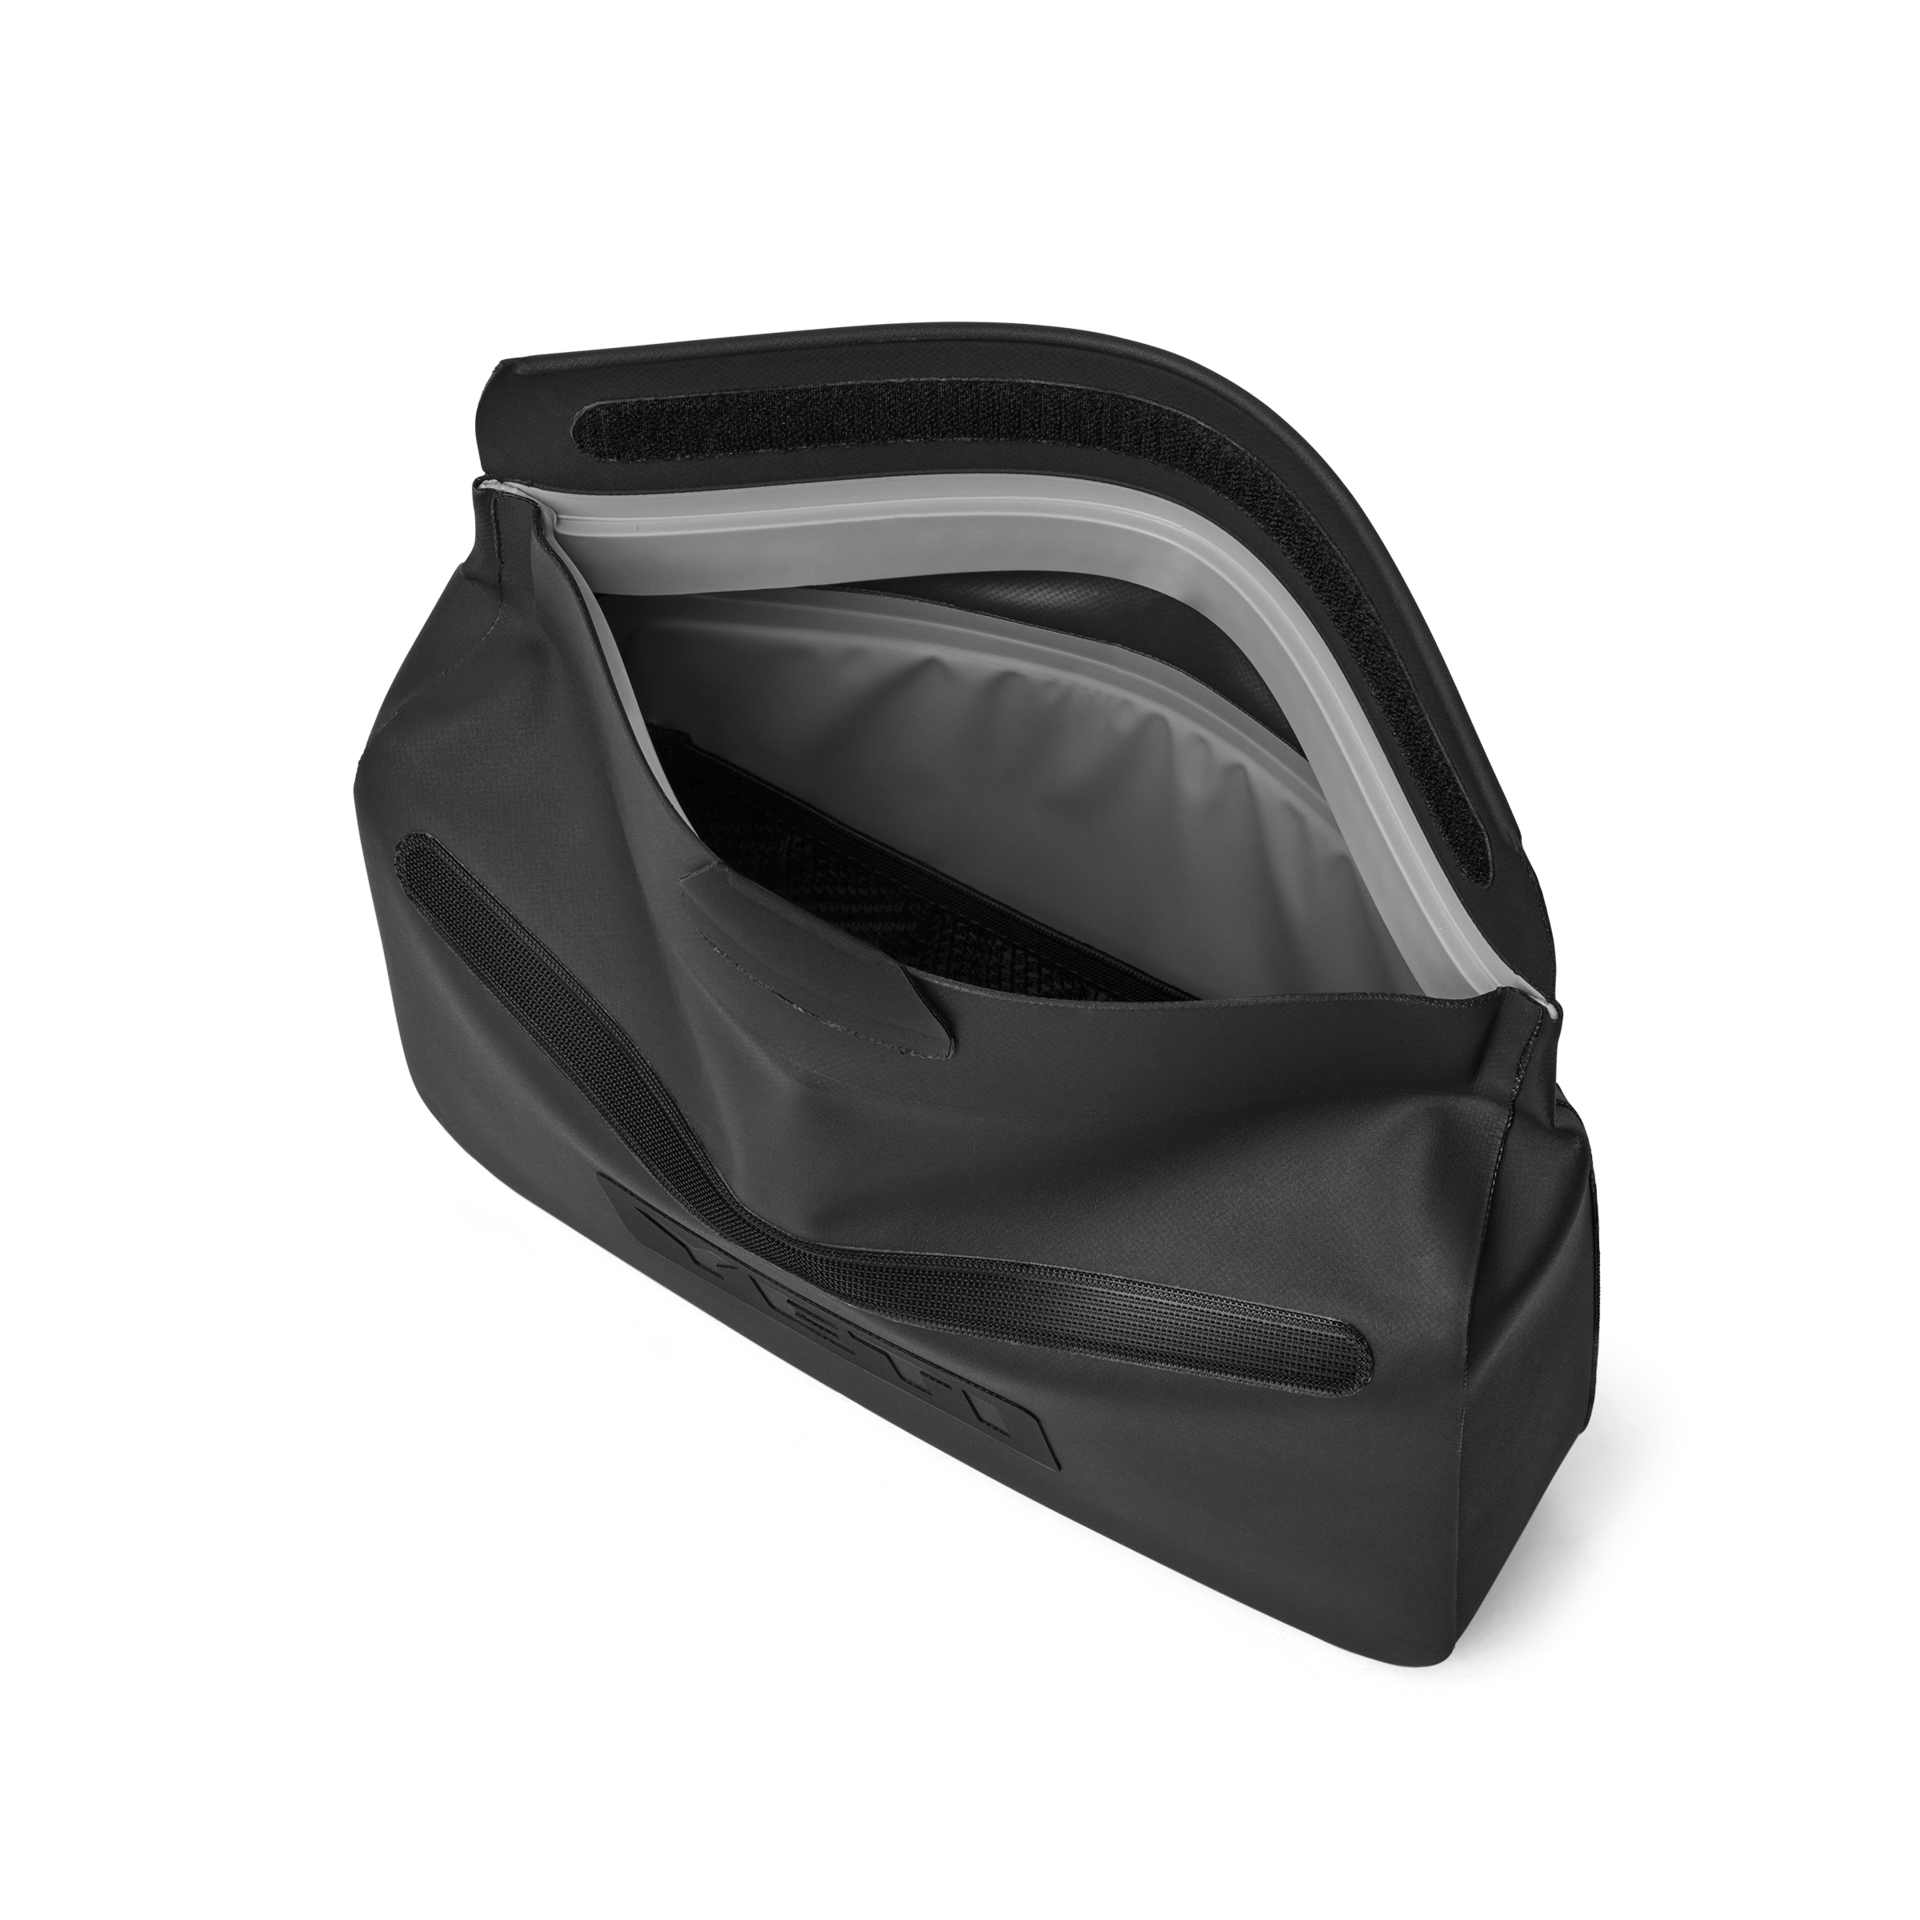 Sidekick Dry Gear Case 3L - Black